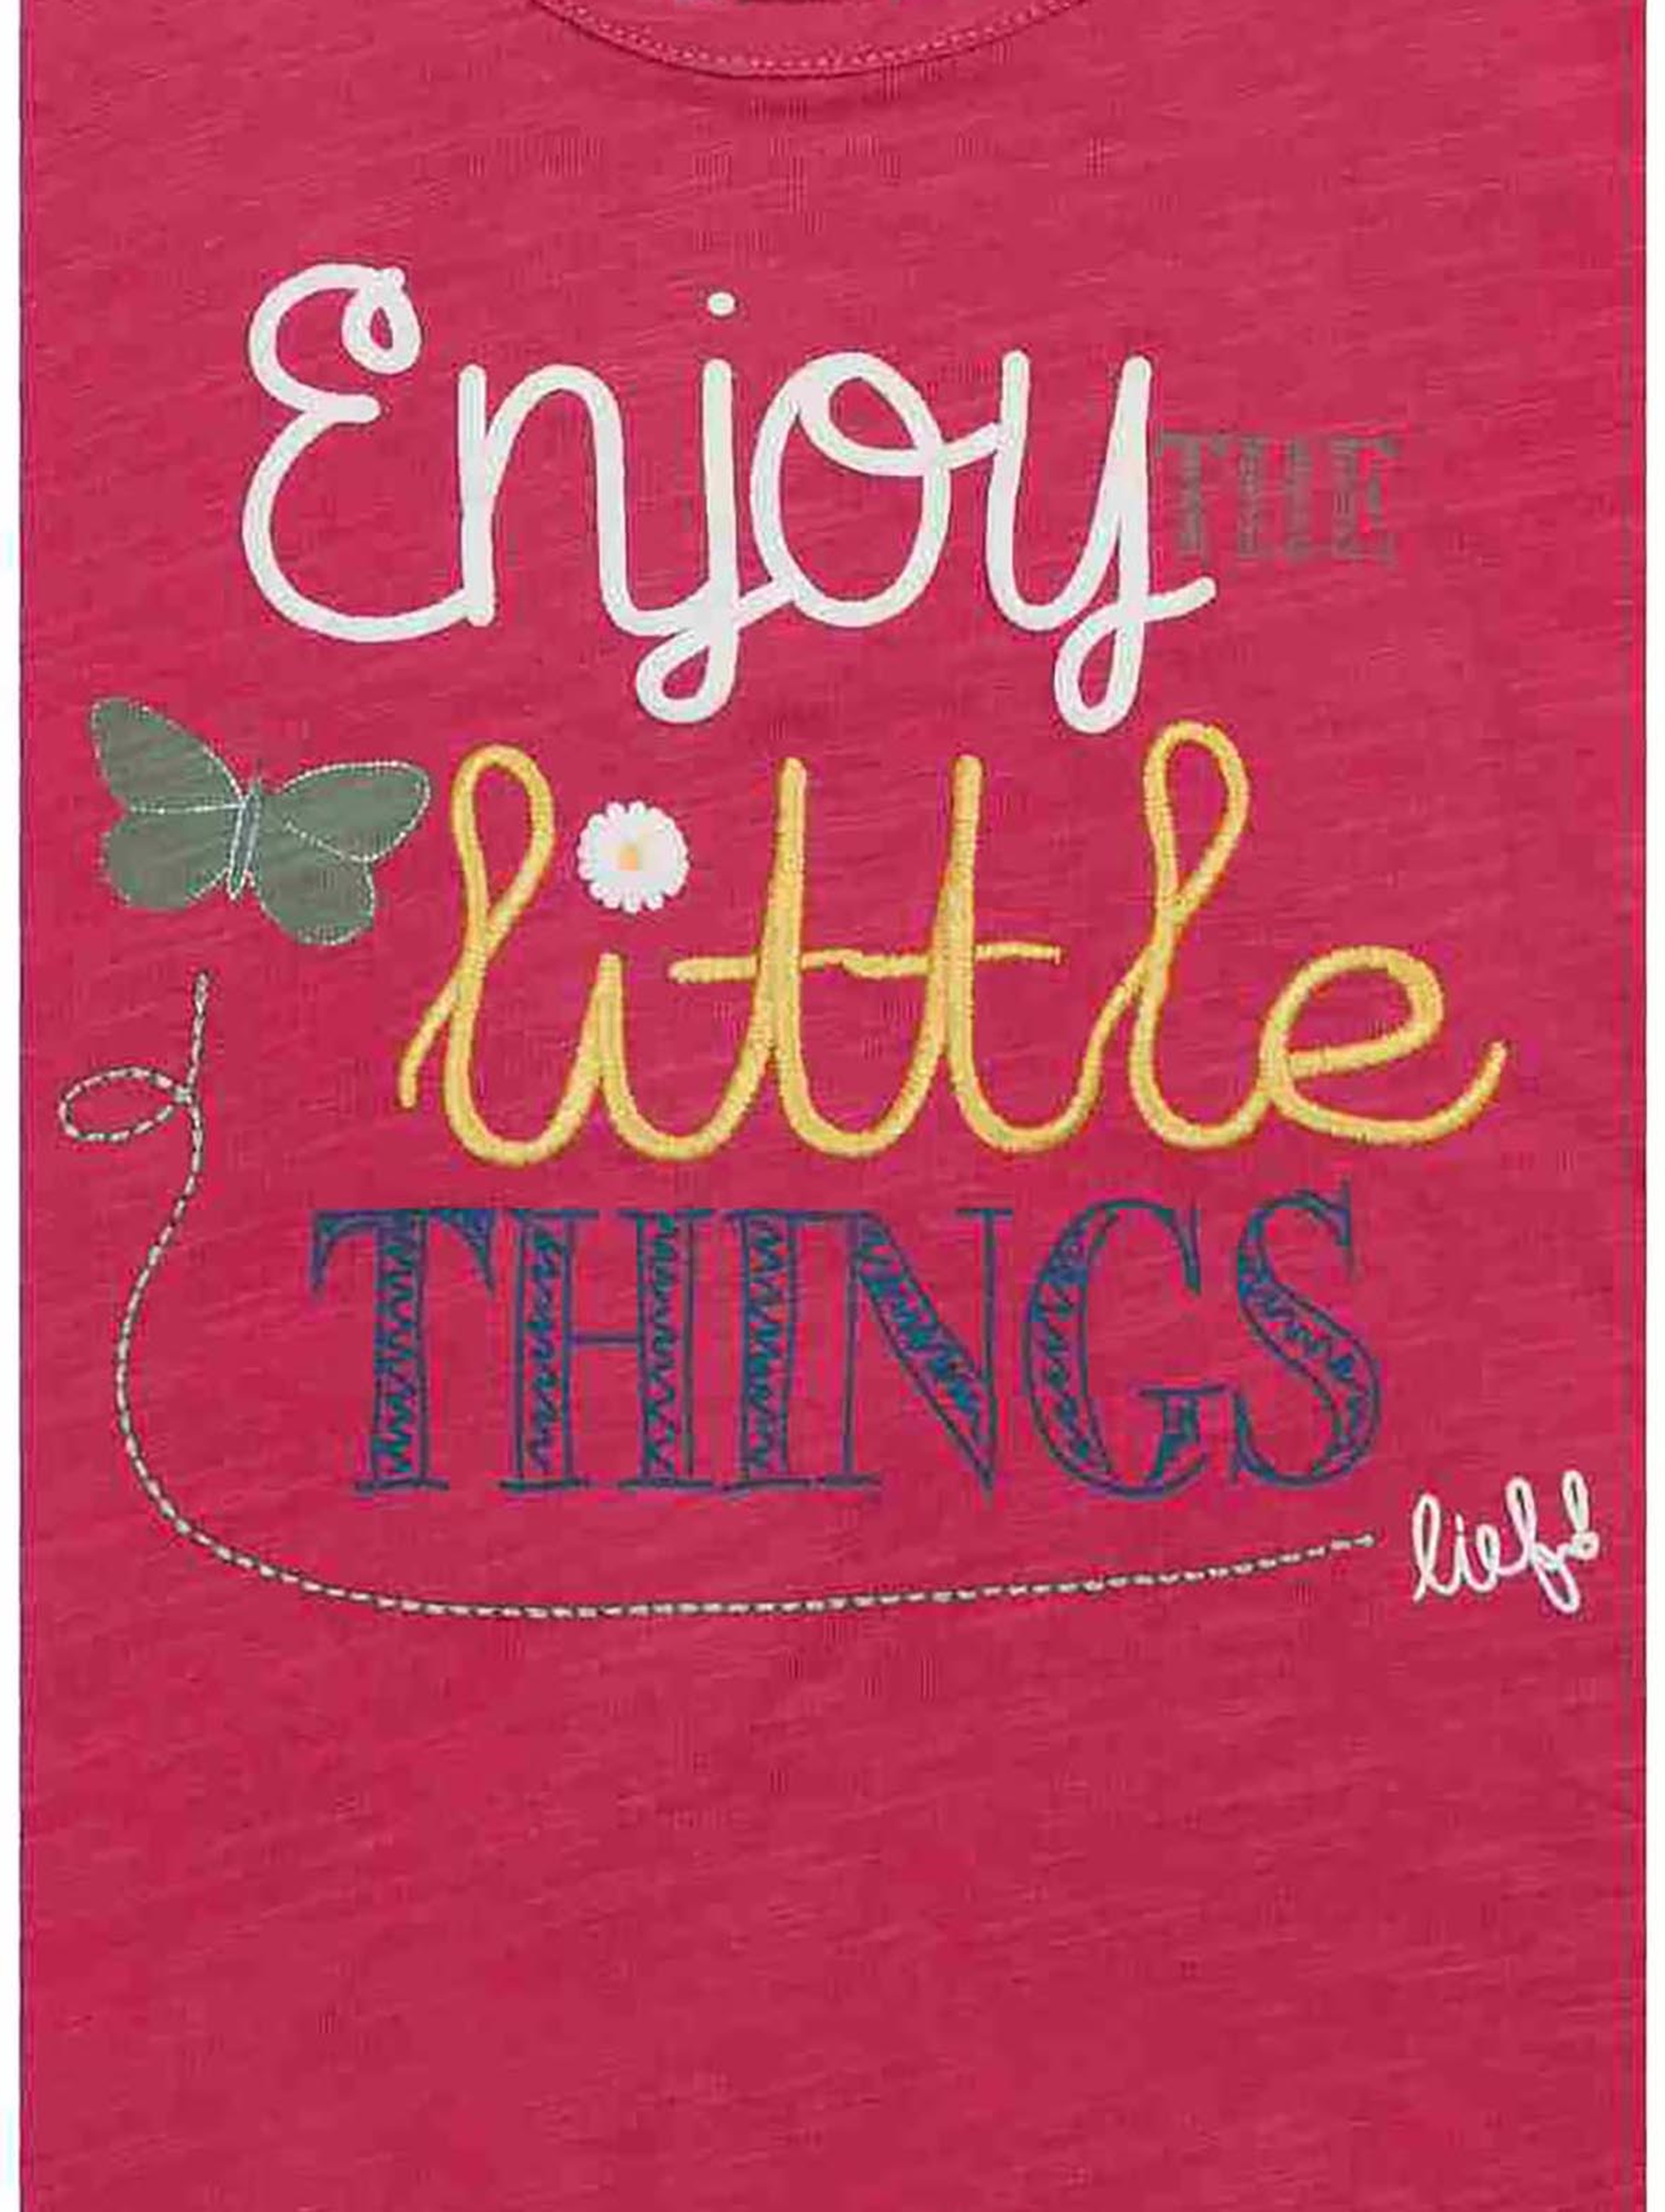 T-shirt dziewczęcy różowy - Enjoy little things - Lief